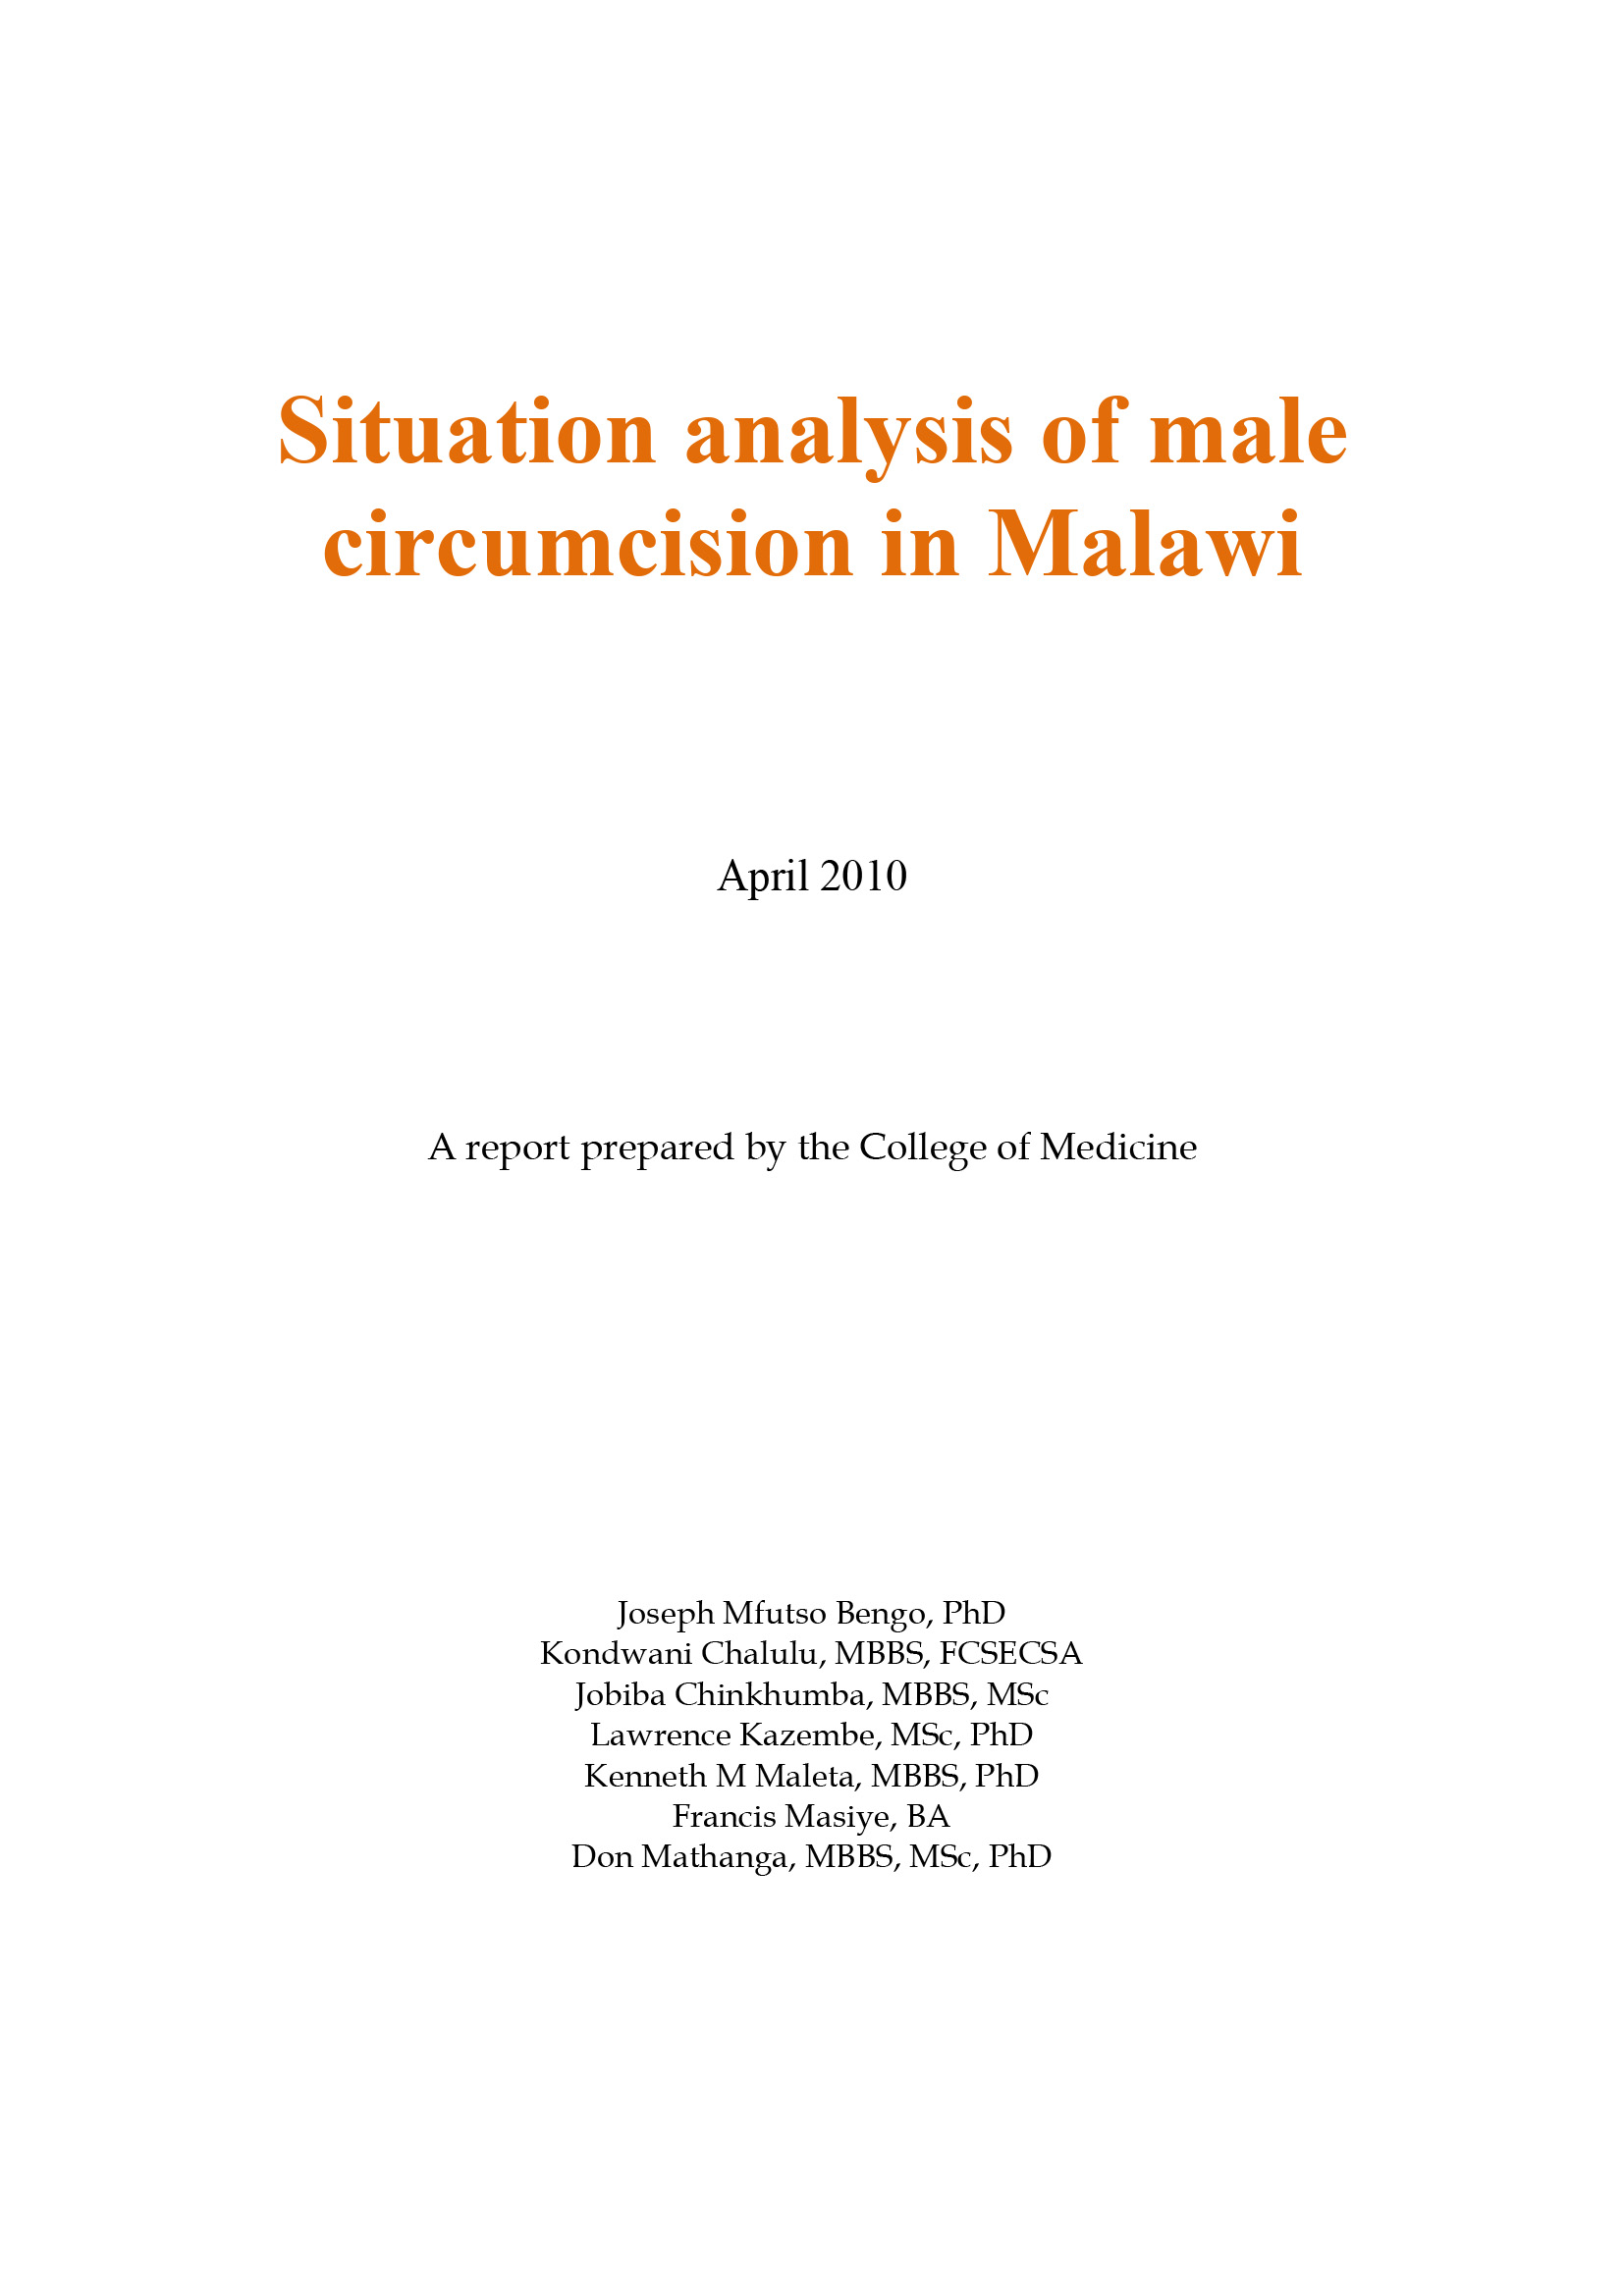 Análise da situação da circuncisão masculina no Malawi - capa